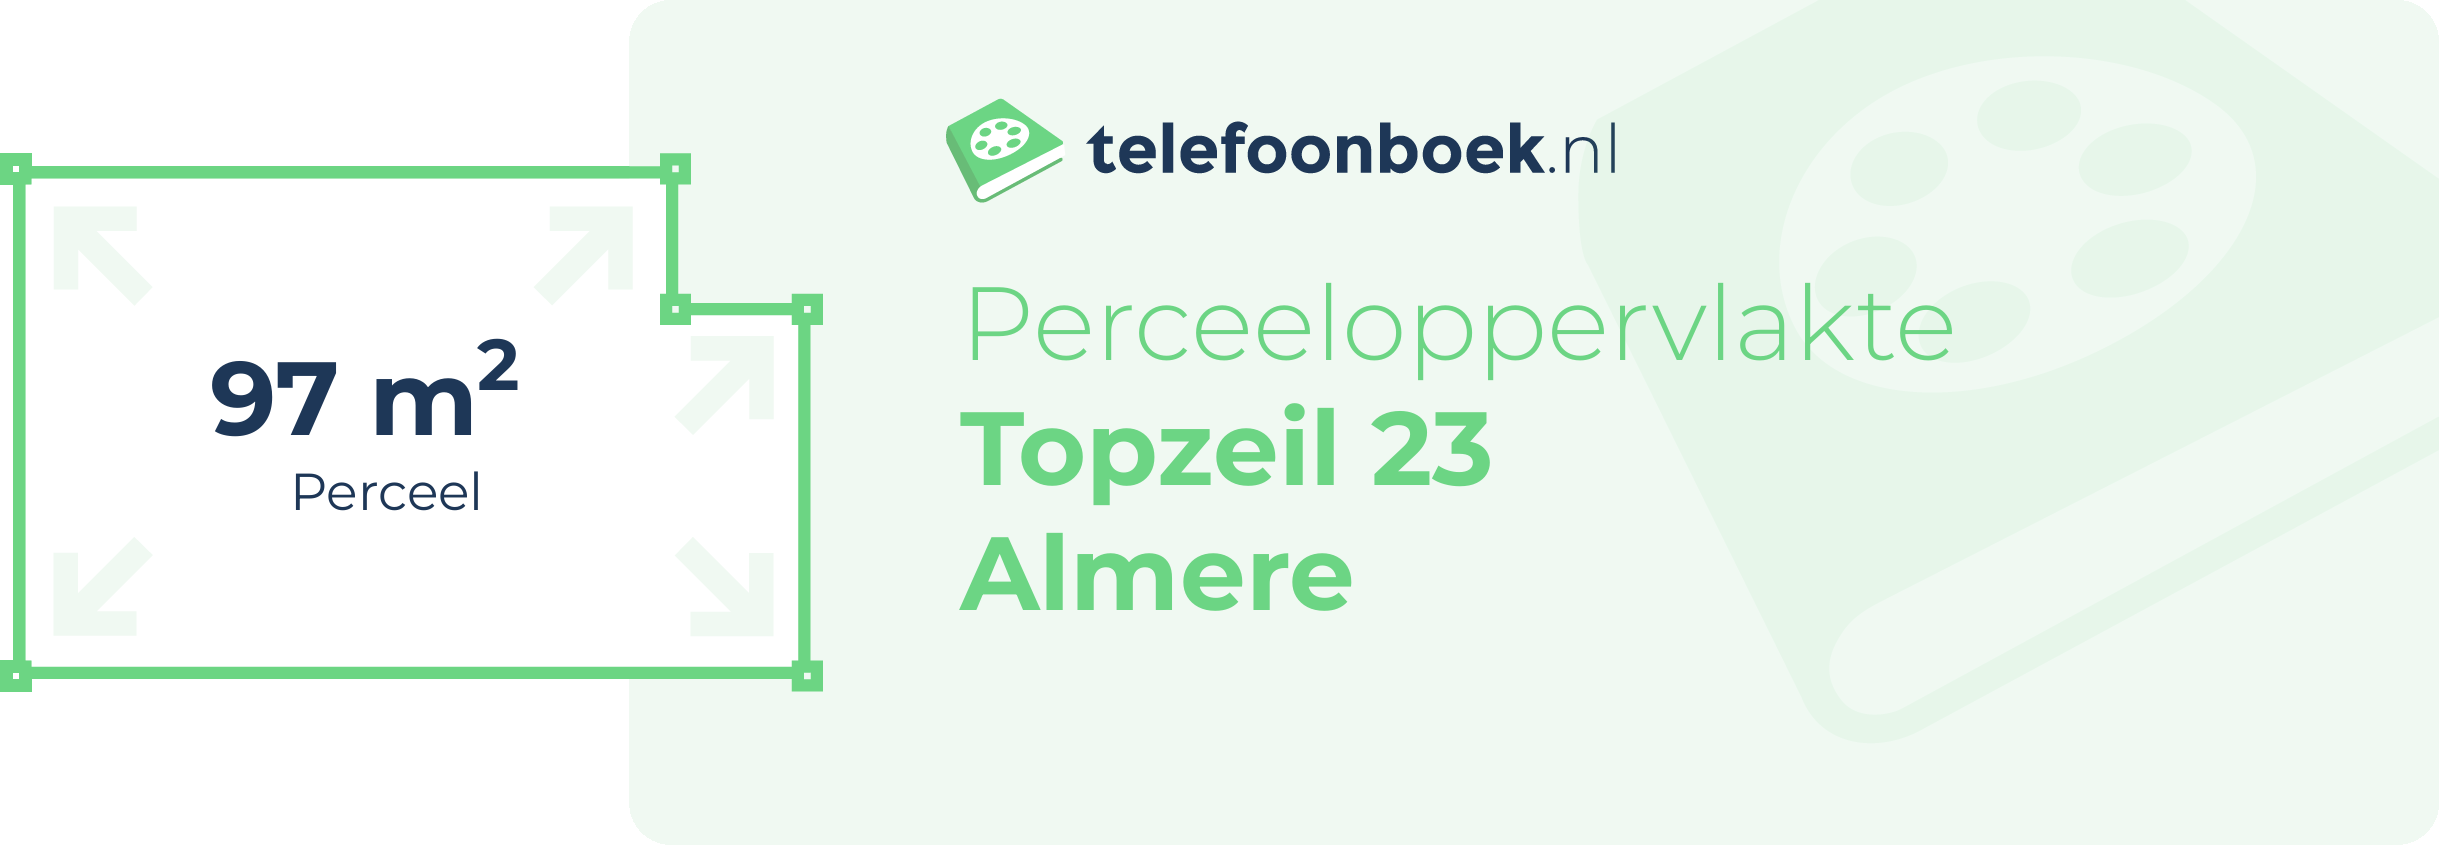 Perceeloppervlakte Topzeil 23 Almere